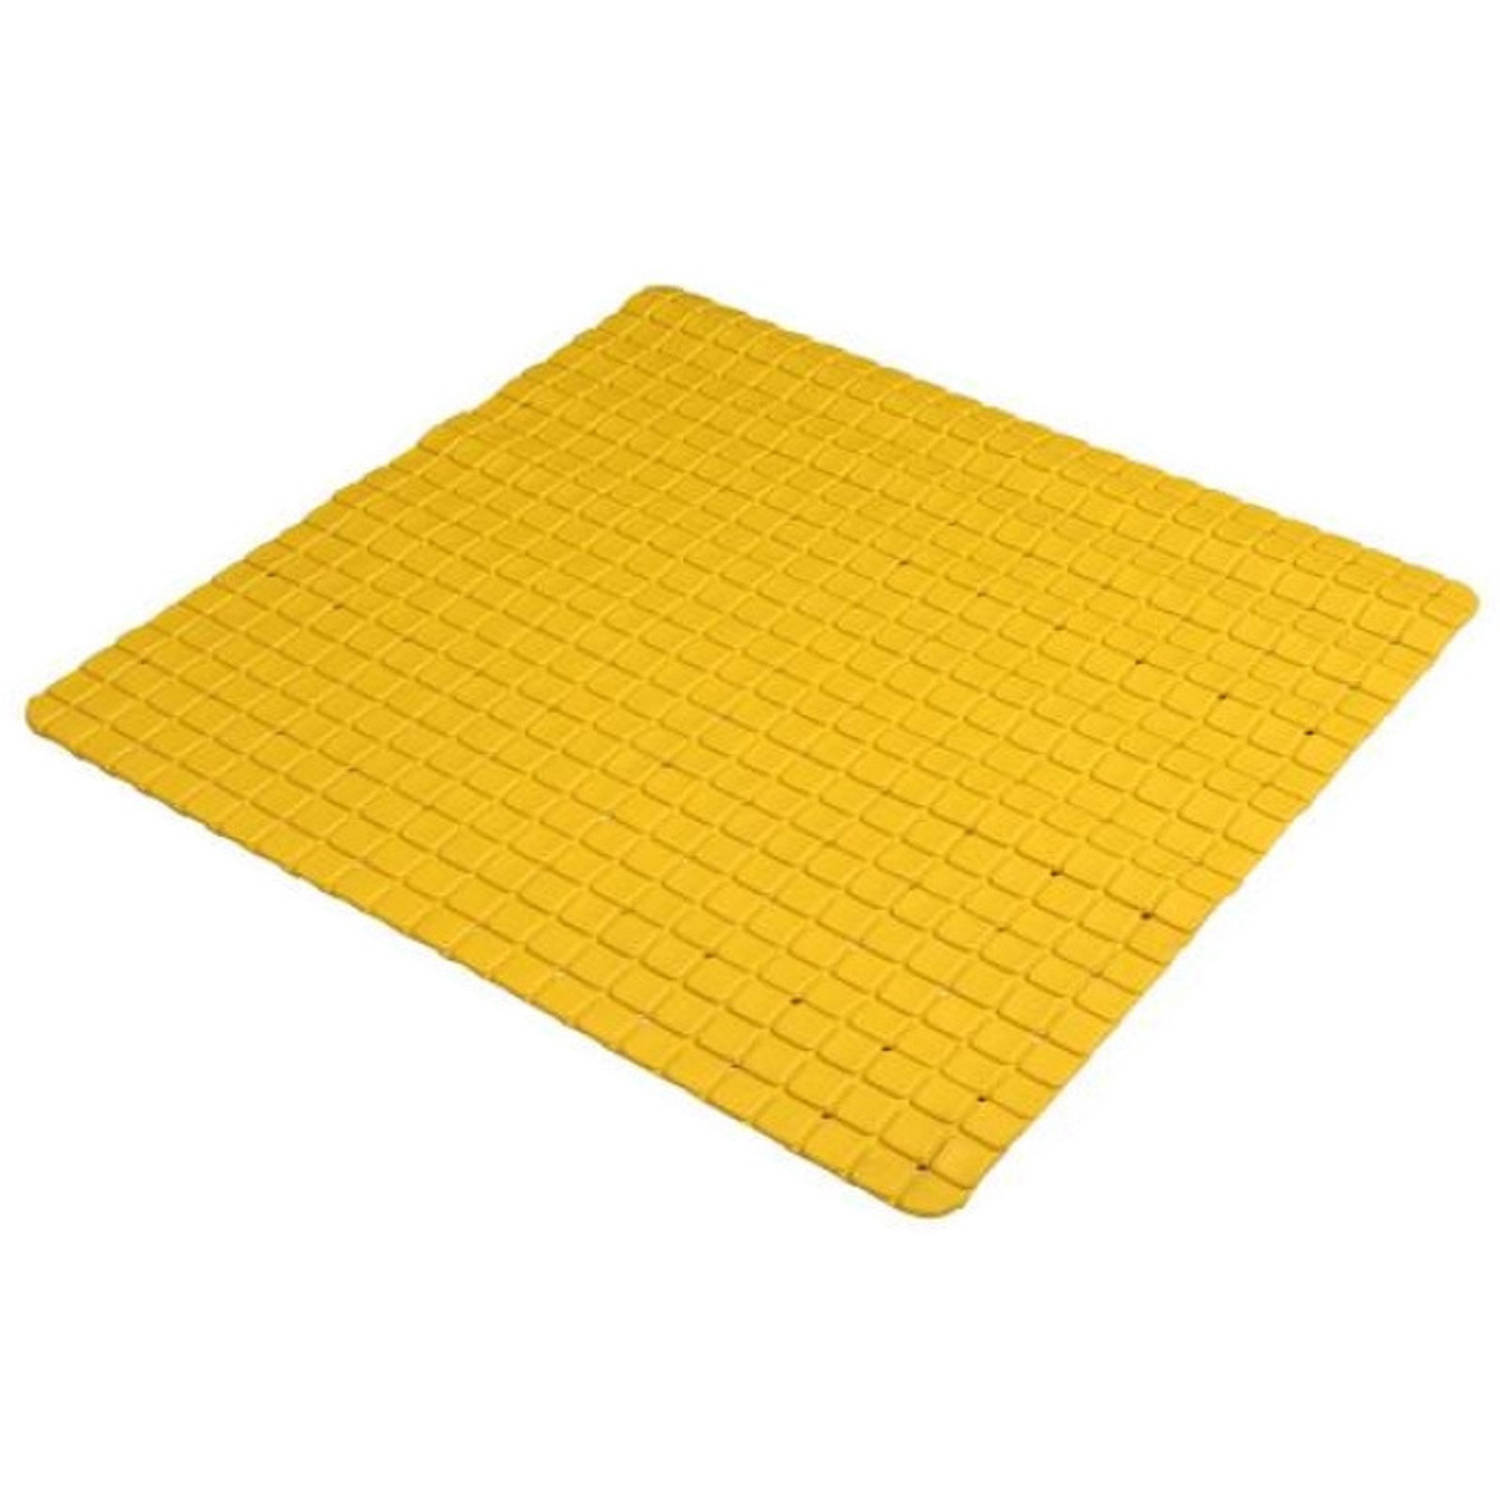 Urban Living Badkamer-douche anti slip mat rubber voor op de vloer okergeel 55 x 55 cm Badmatjes